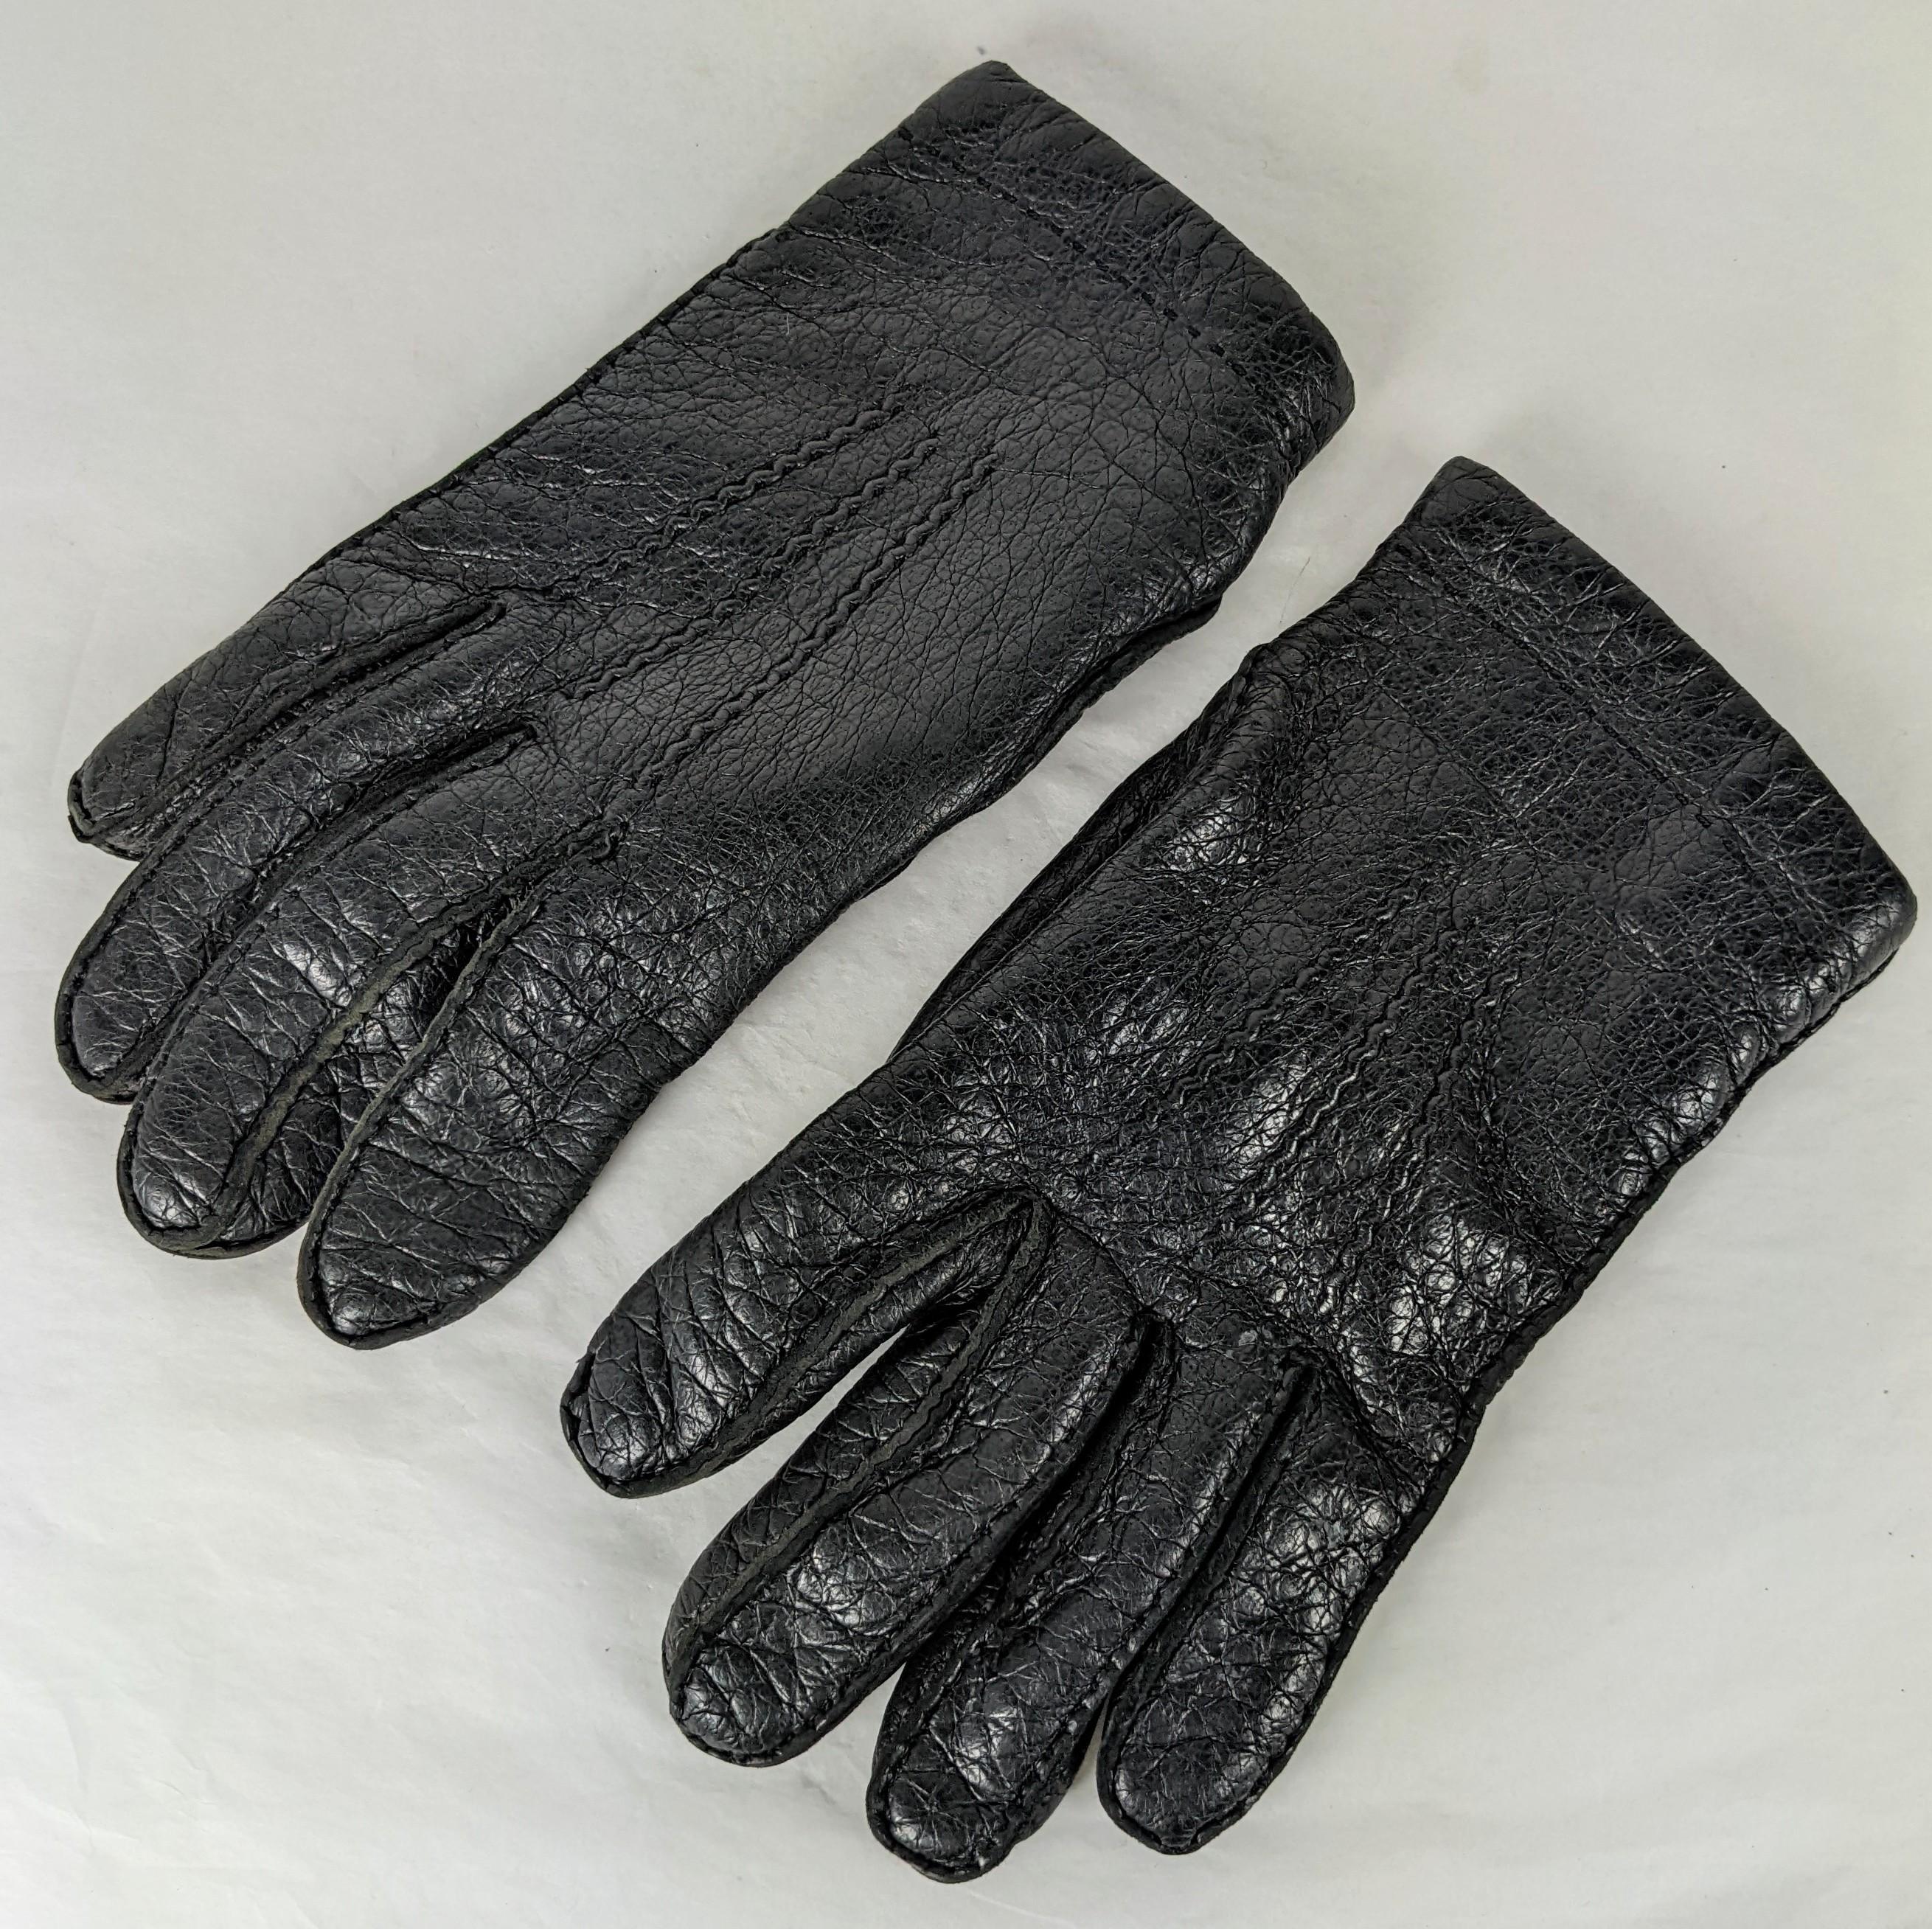 Vintage Hermes Mens Deerskin Cashmere Lined Gloves. Peau de daim noire cousue à la main avec doublure en tricot de cachemire beige. Taille 8. France des années 1980. 